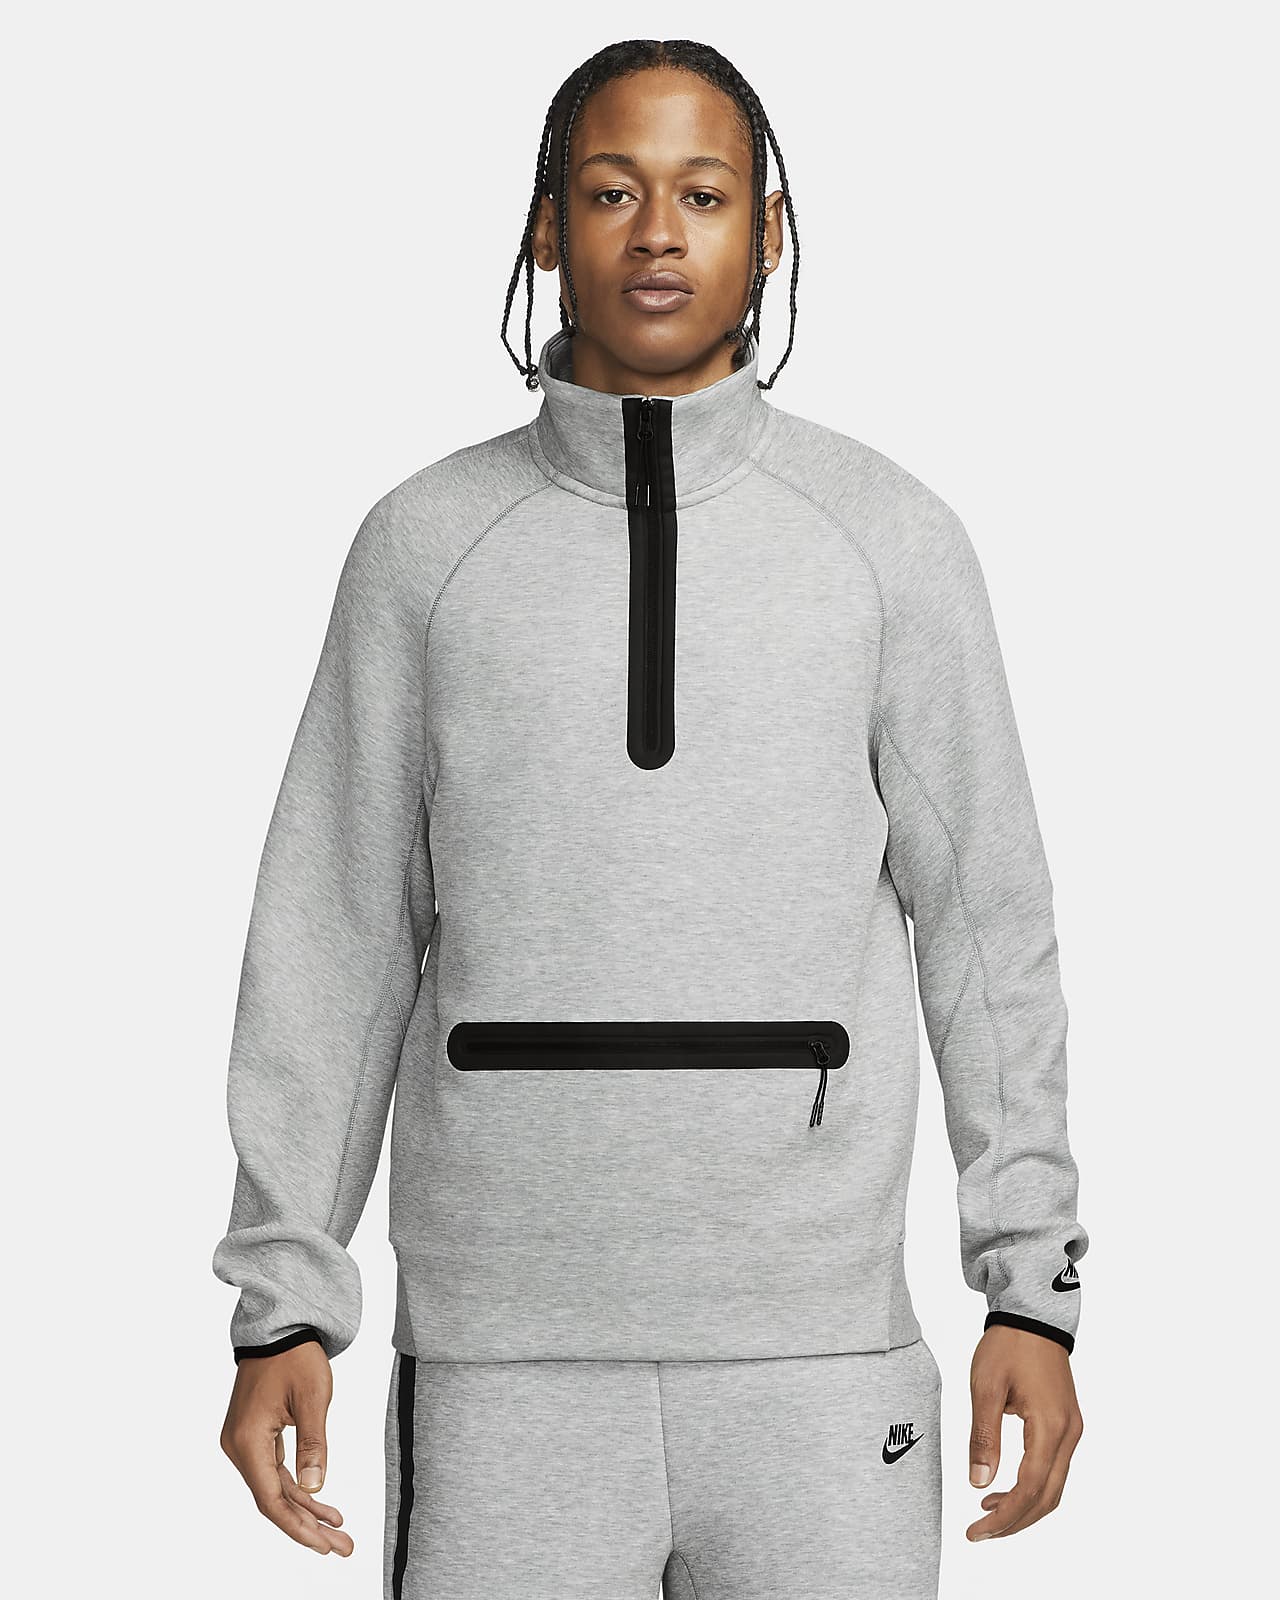 Sweatshirt com fecho até meio Nike Sportswear Tech Fleece para homem